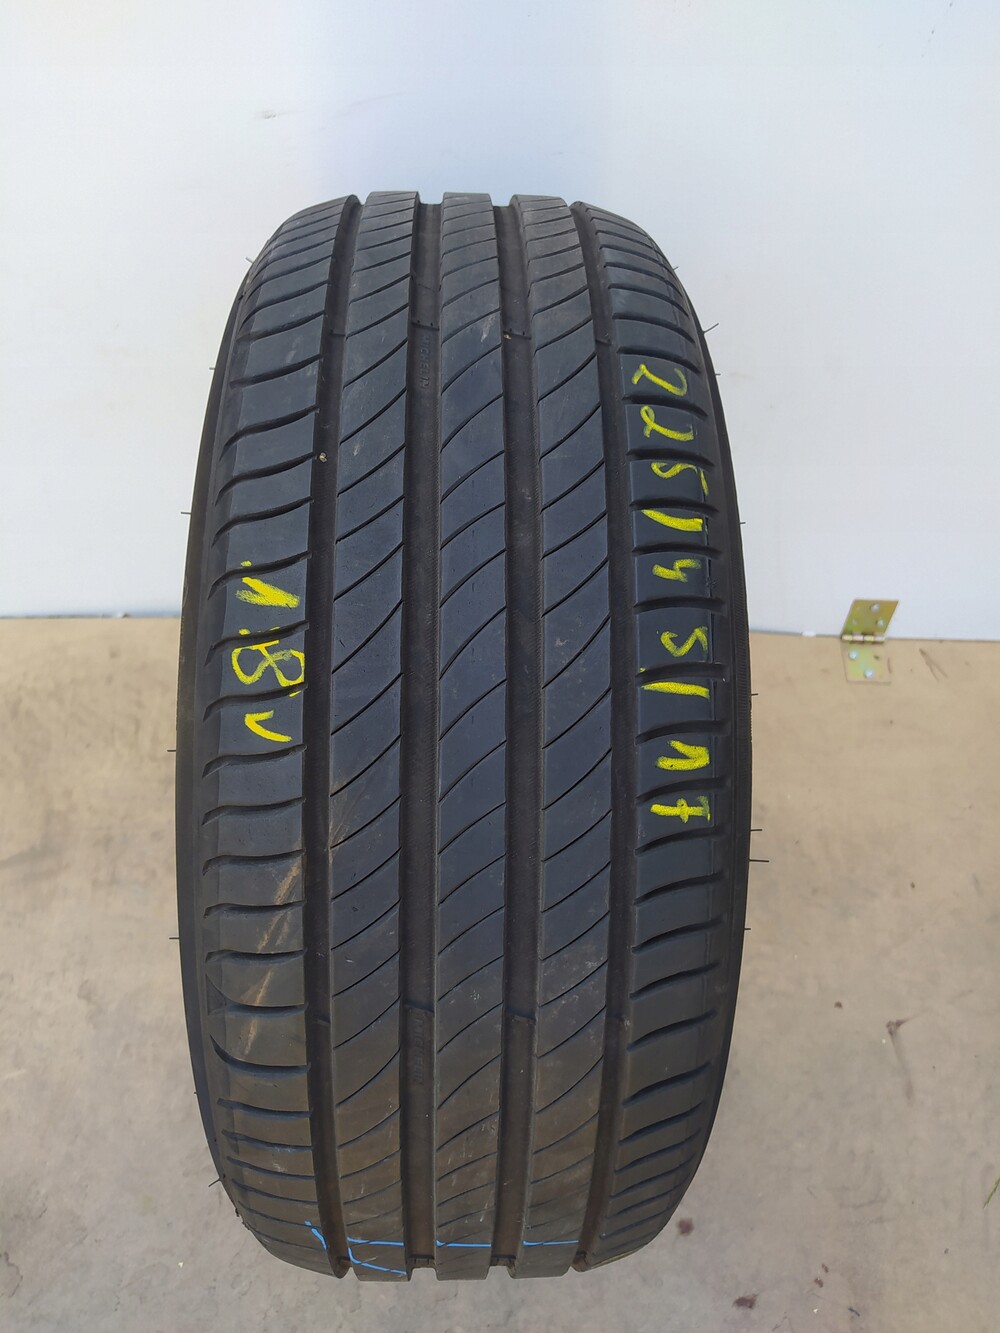 Michelin Primacy 4 235/45 r18 98w. Bridgestone Turanza 6.